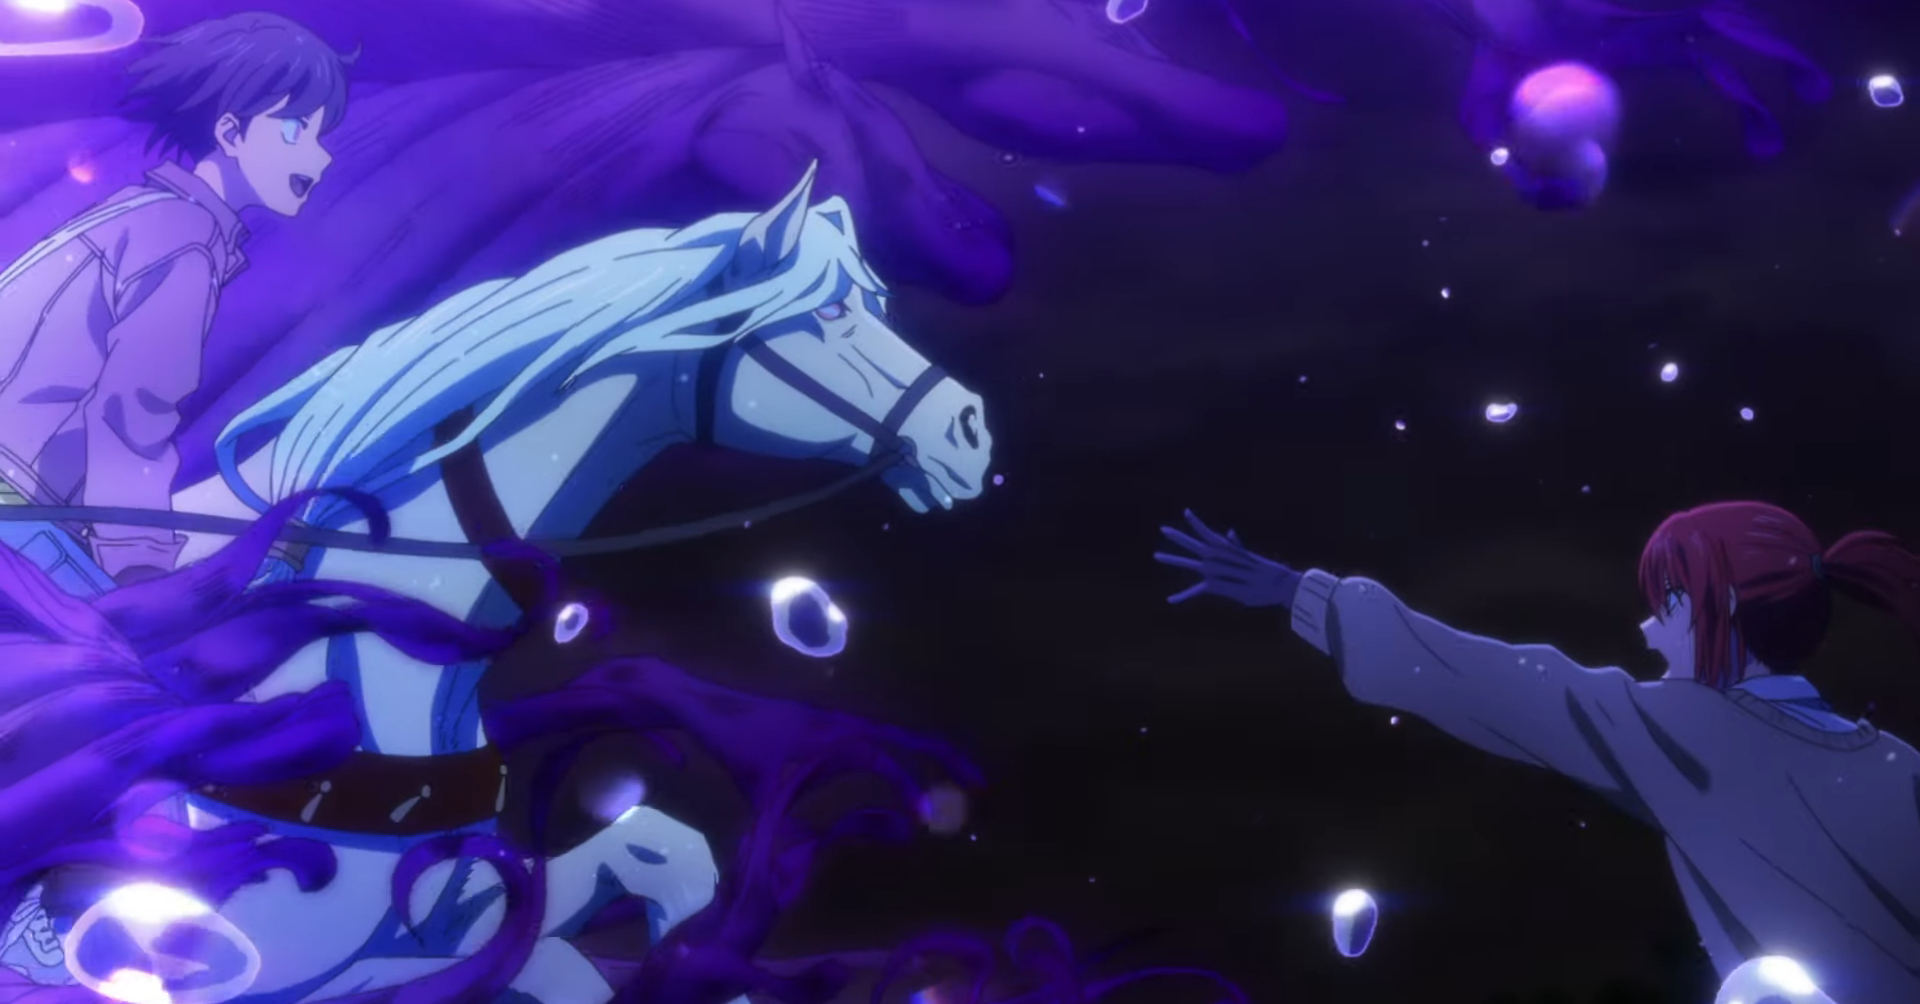 The Ancient Magus' Bride: Trailer para o 2º episódio do novo OAD do mangá »  Anime Xis